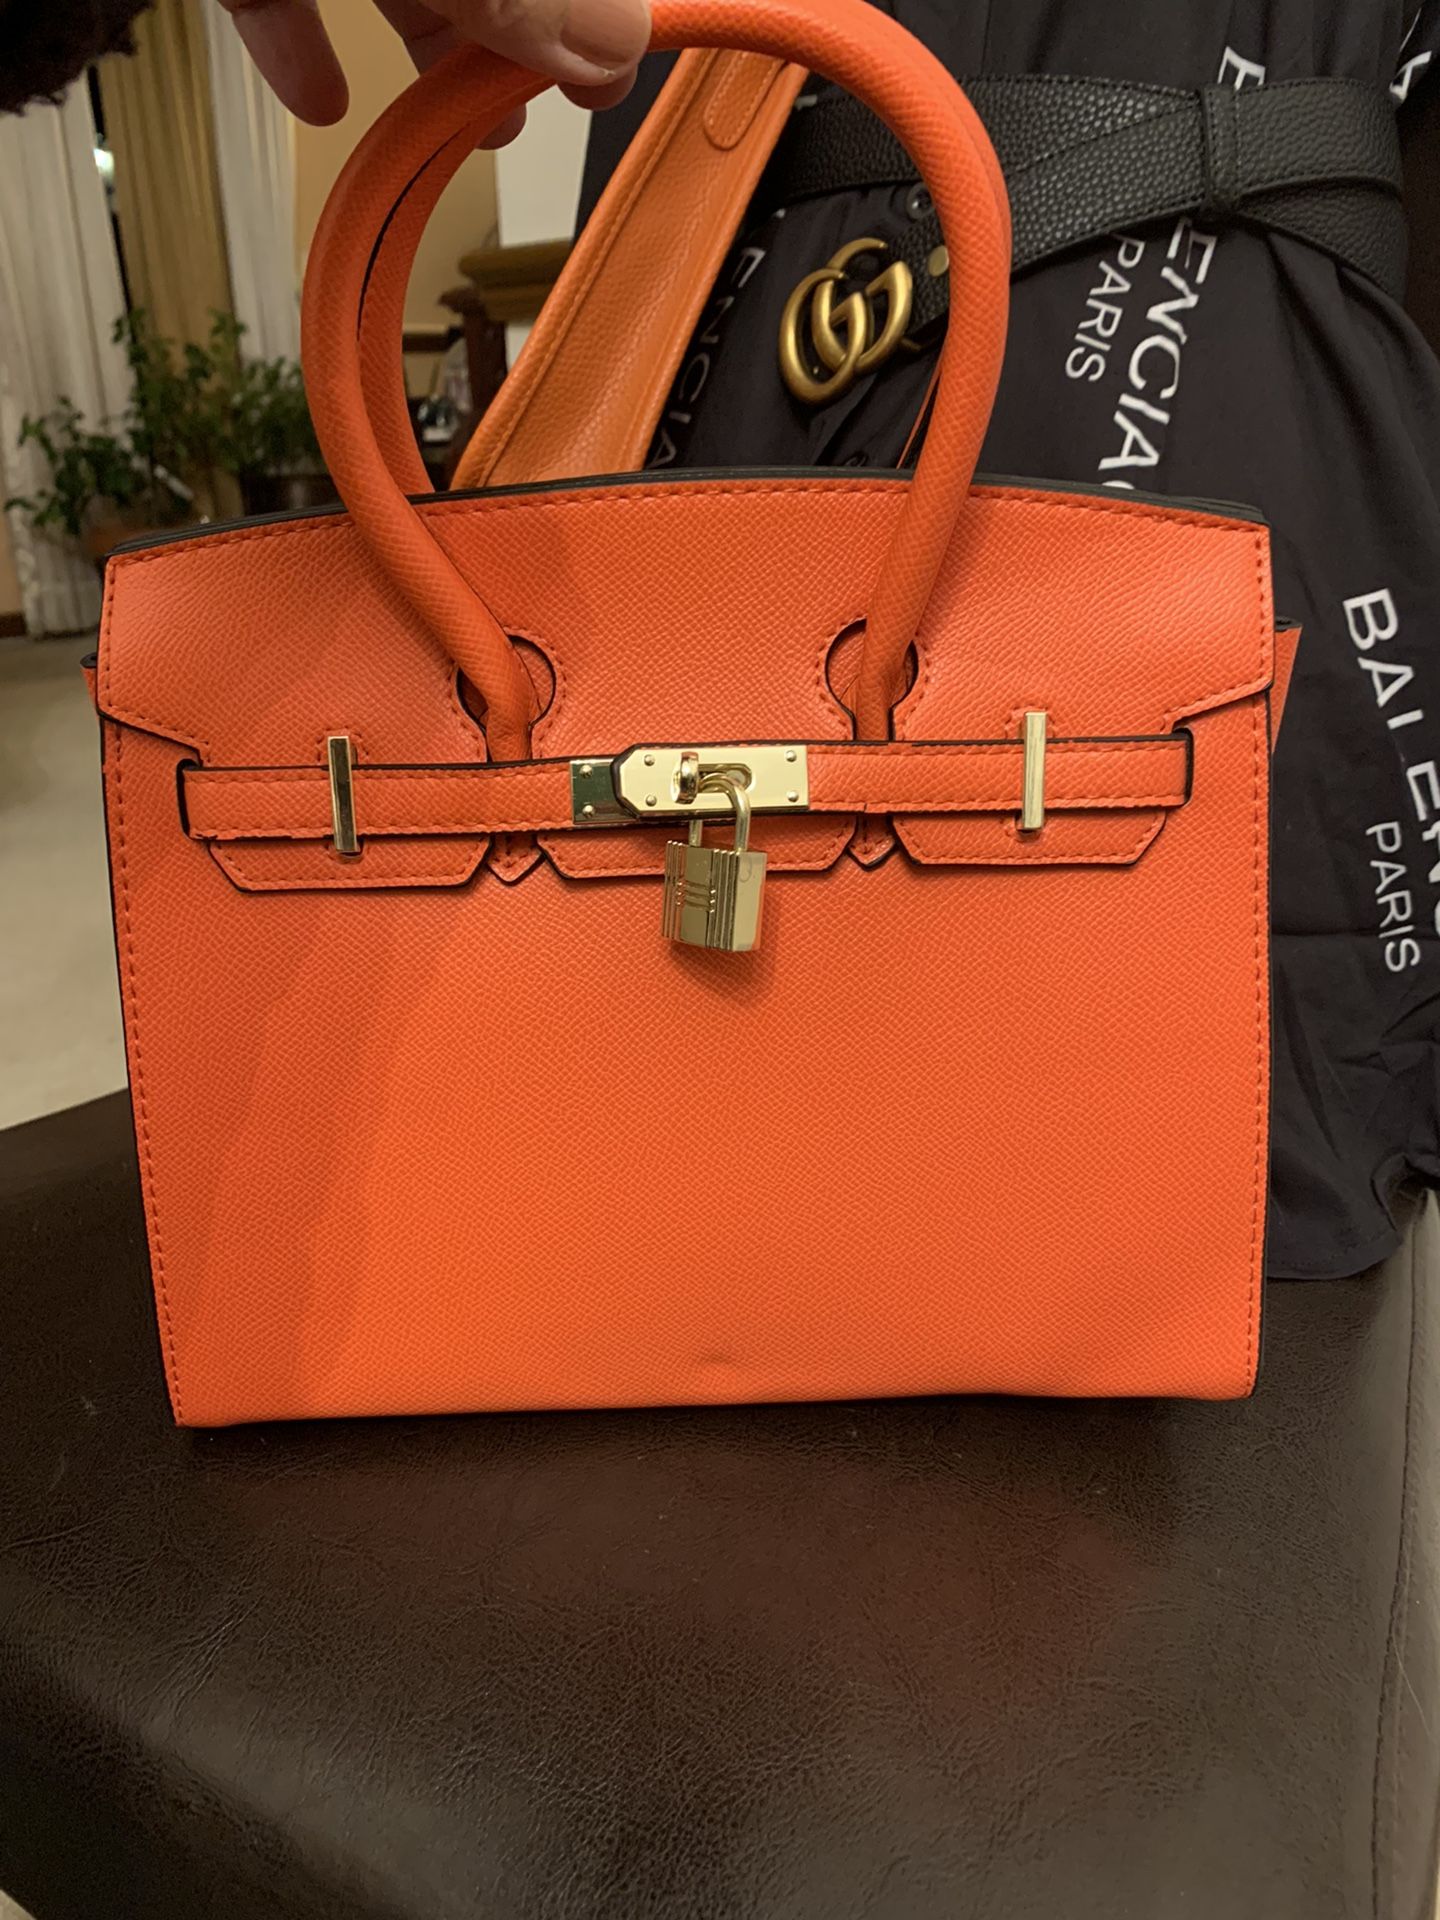 Beautiful Orange Leather HandBag Shoulder Bag